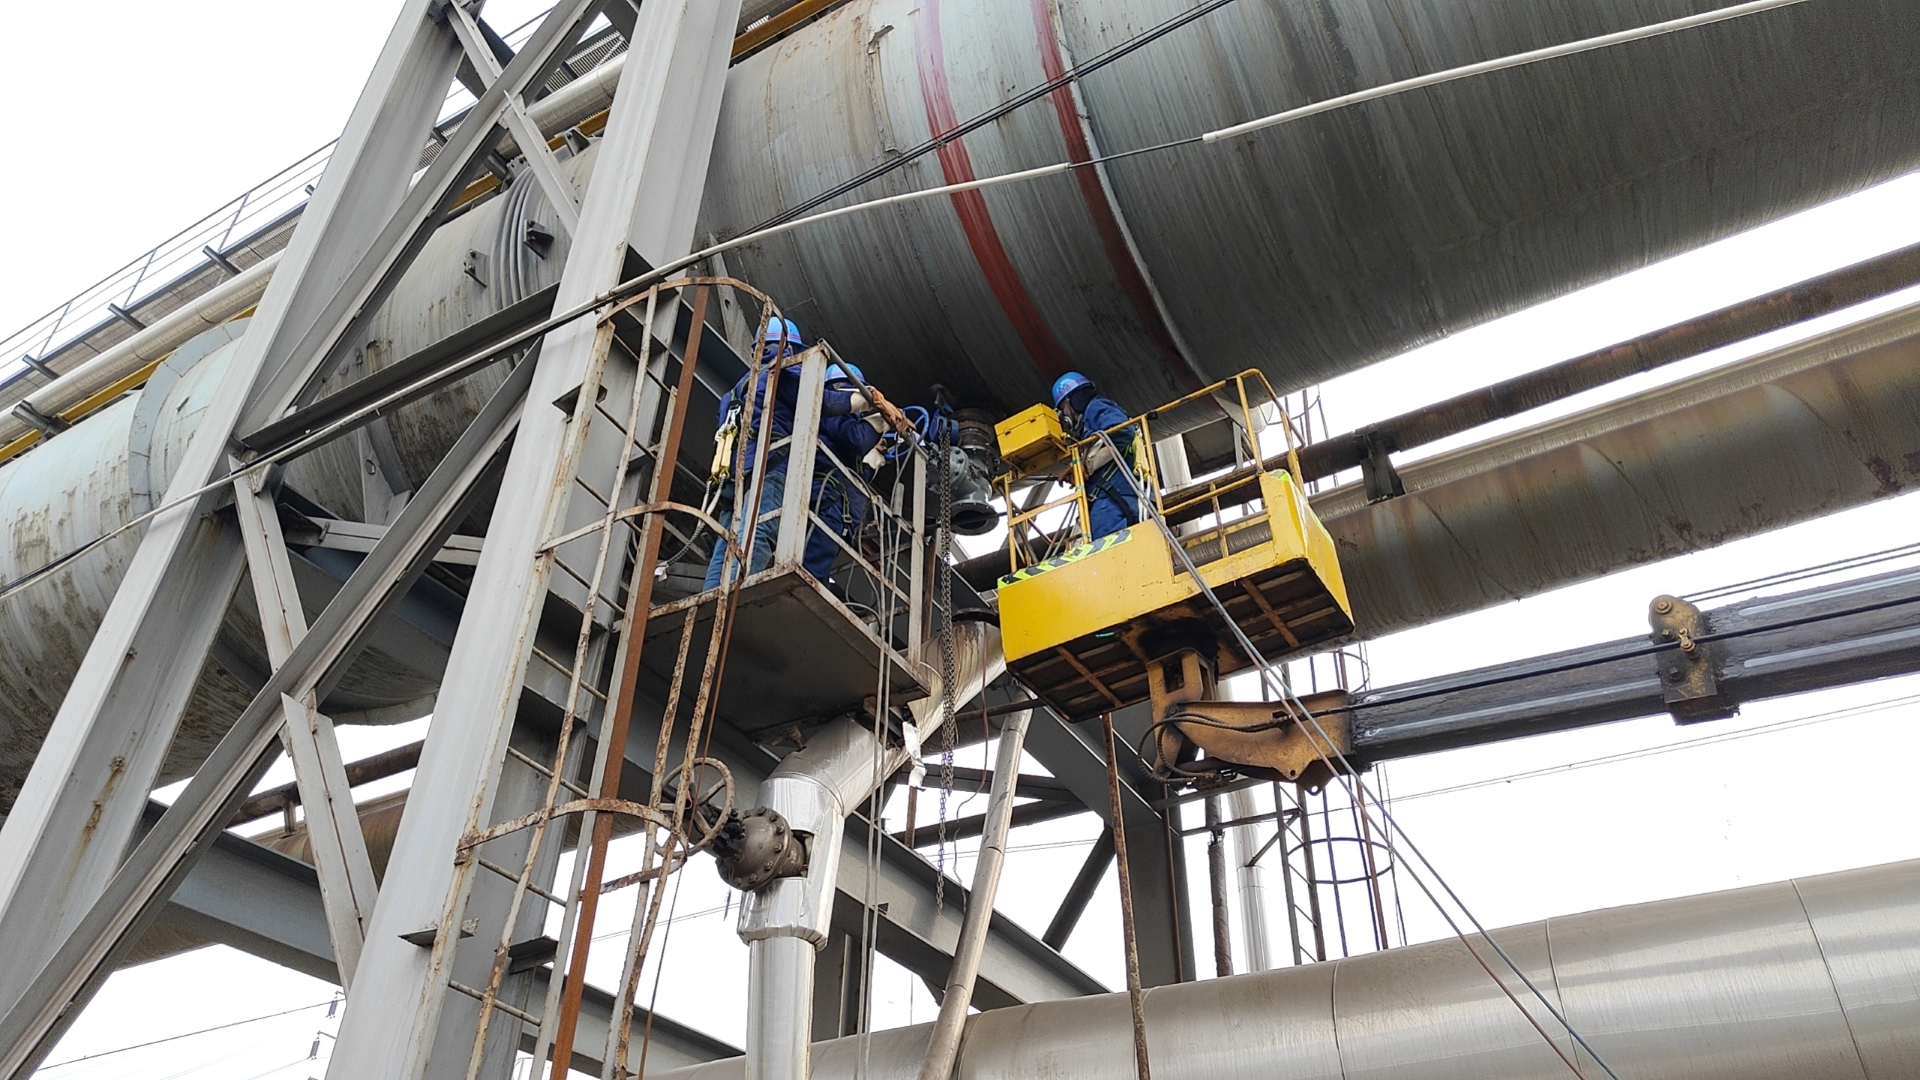 工艺做减法 能效做加法——龙钢公司十万立方米煤气柜无气柜运行改造项目顺利投运